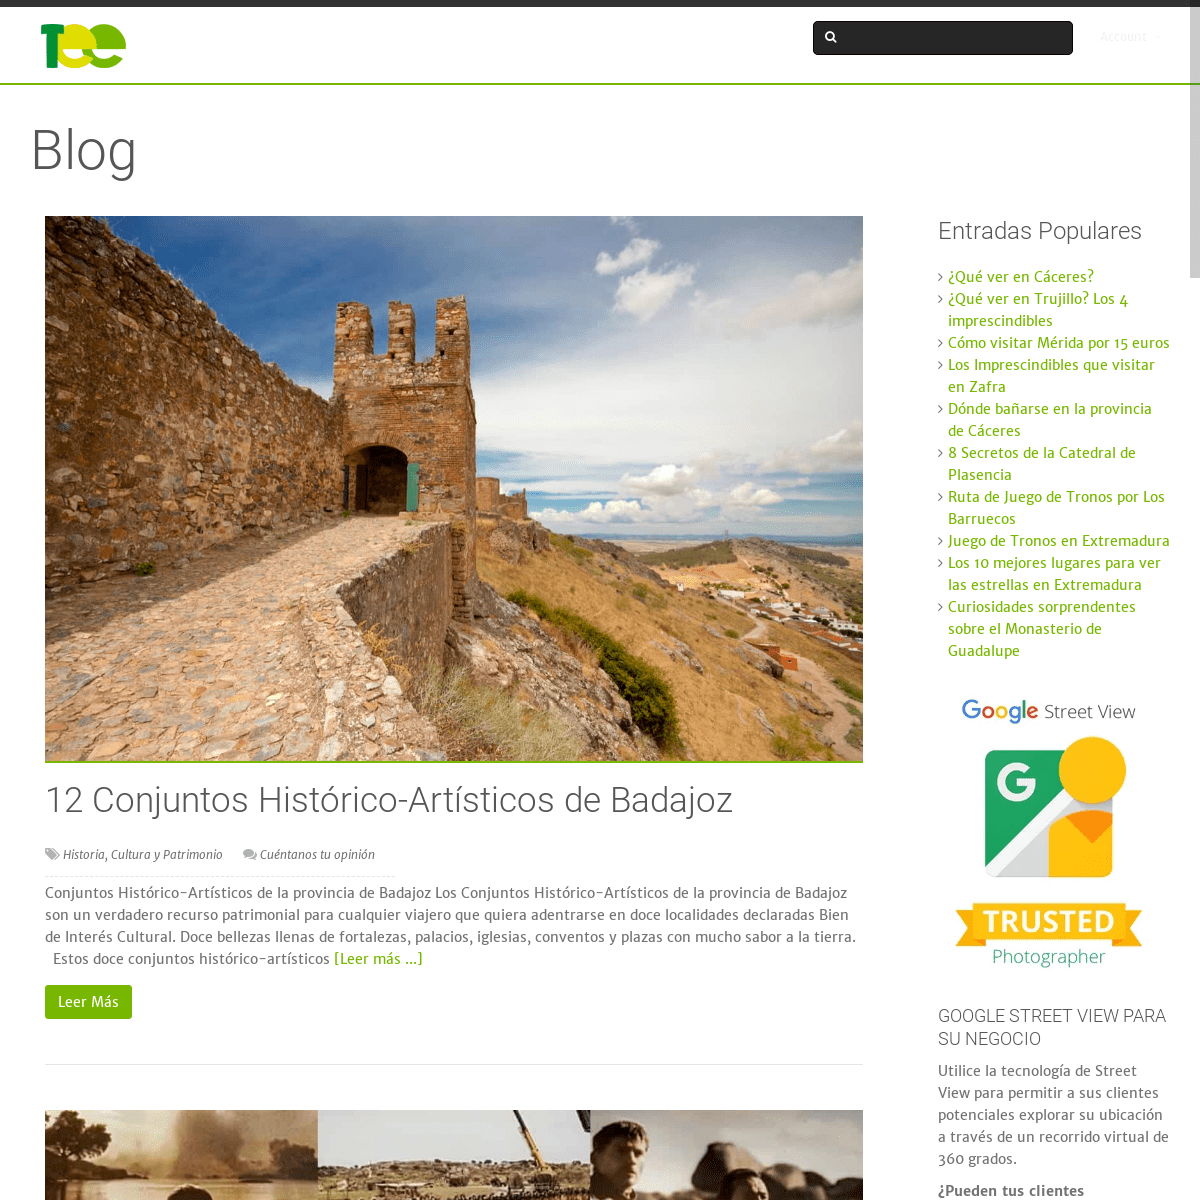 Turismo en Extremadura - Guía de turismo por Extremadura para la inspiración del viajero. Información turística sobre visitas a 